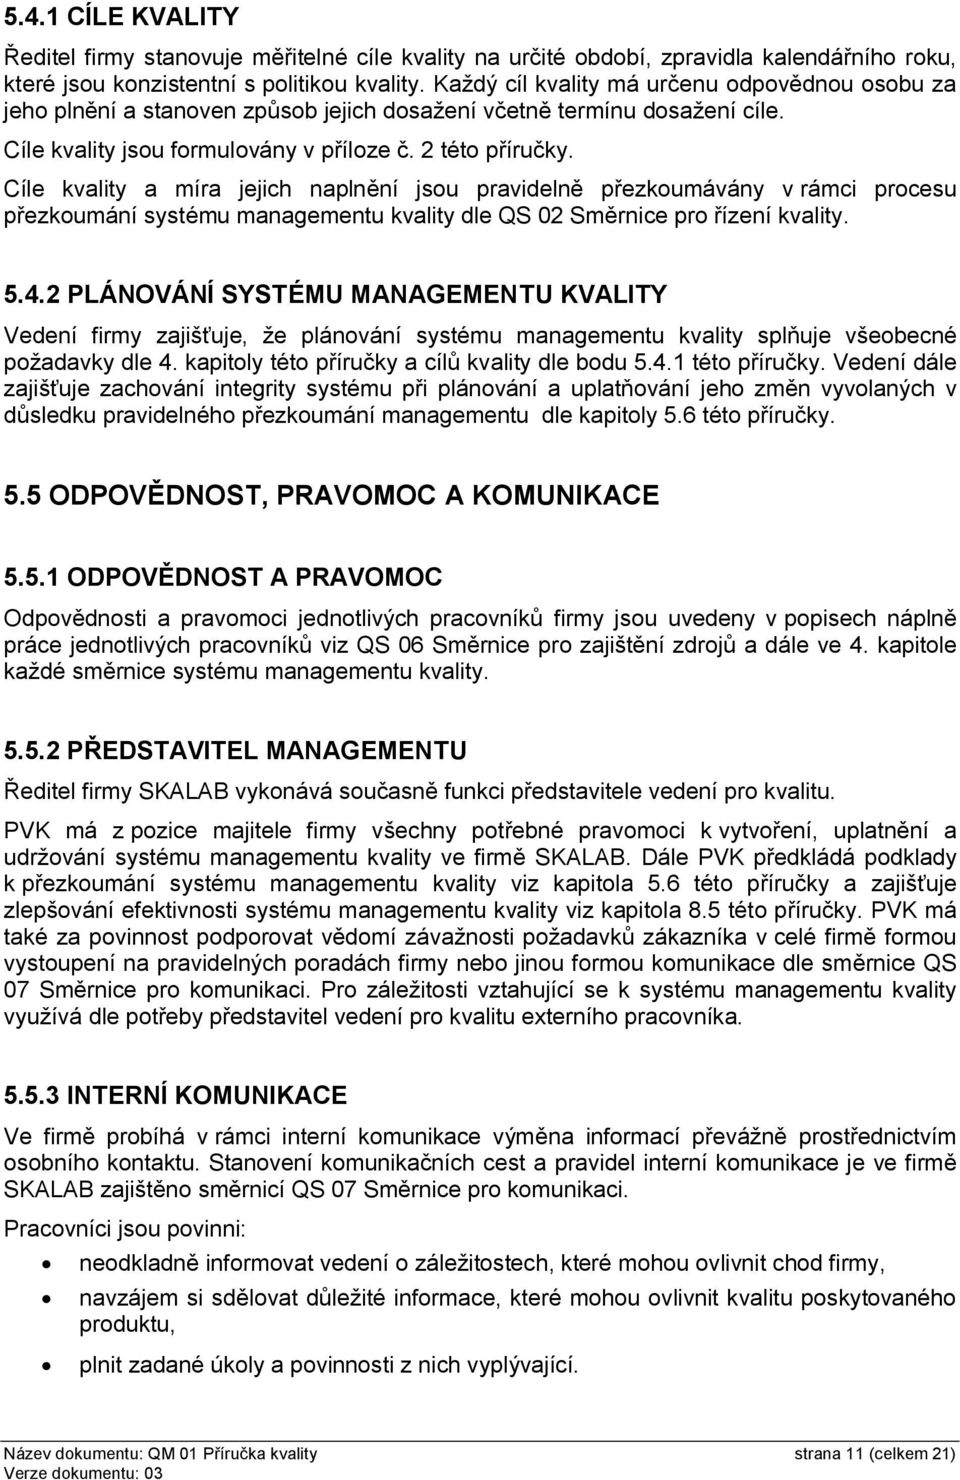 Cíle kvality a míra jejich naplnění jsou pravidelně přezkoumávány v rámci procesu přezkoumání systému managementu kvality dle QS 02 řízení kvality. 5.4.